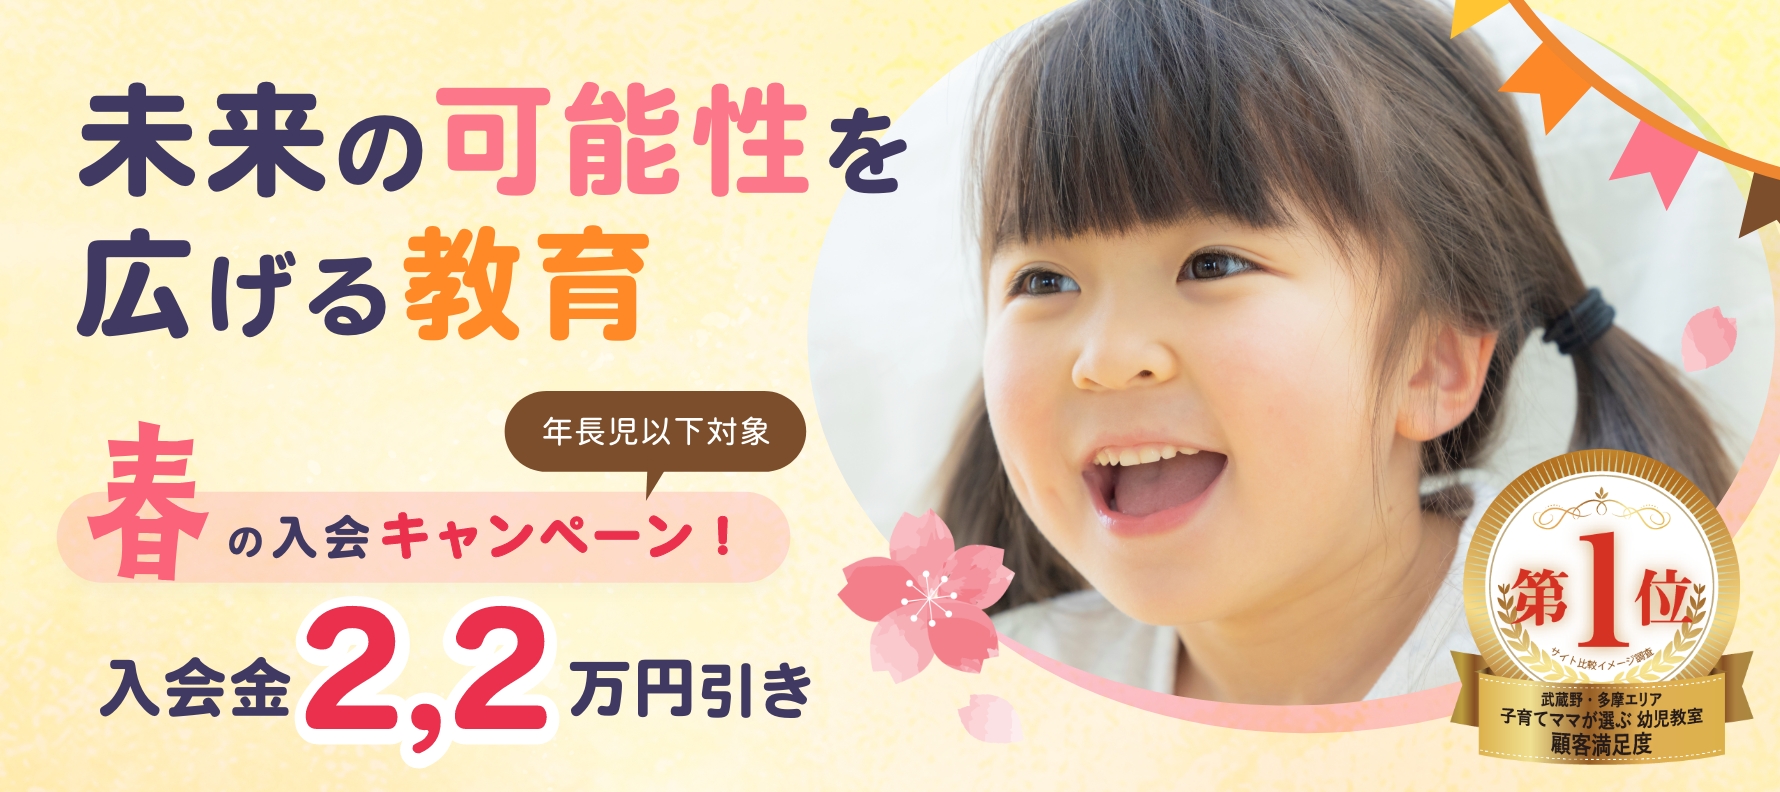 春の国分寺幼児教室入会キャンペーン